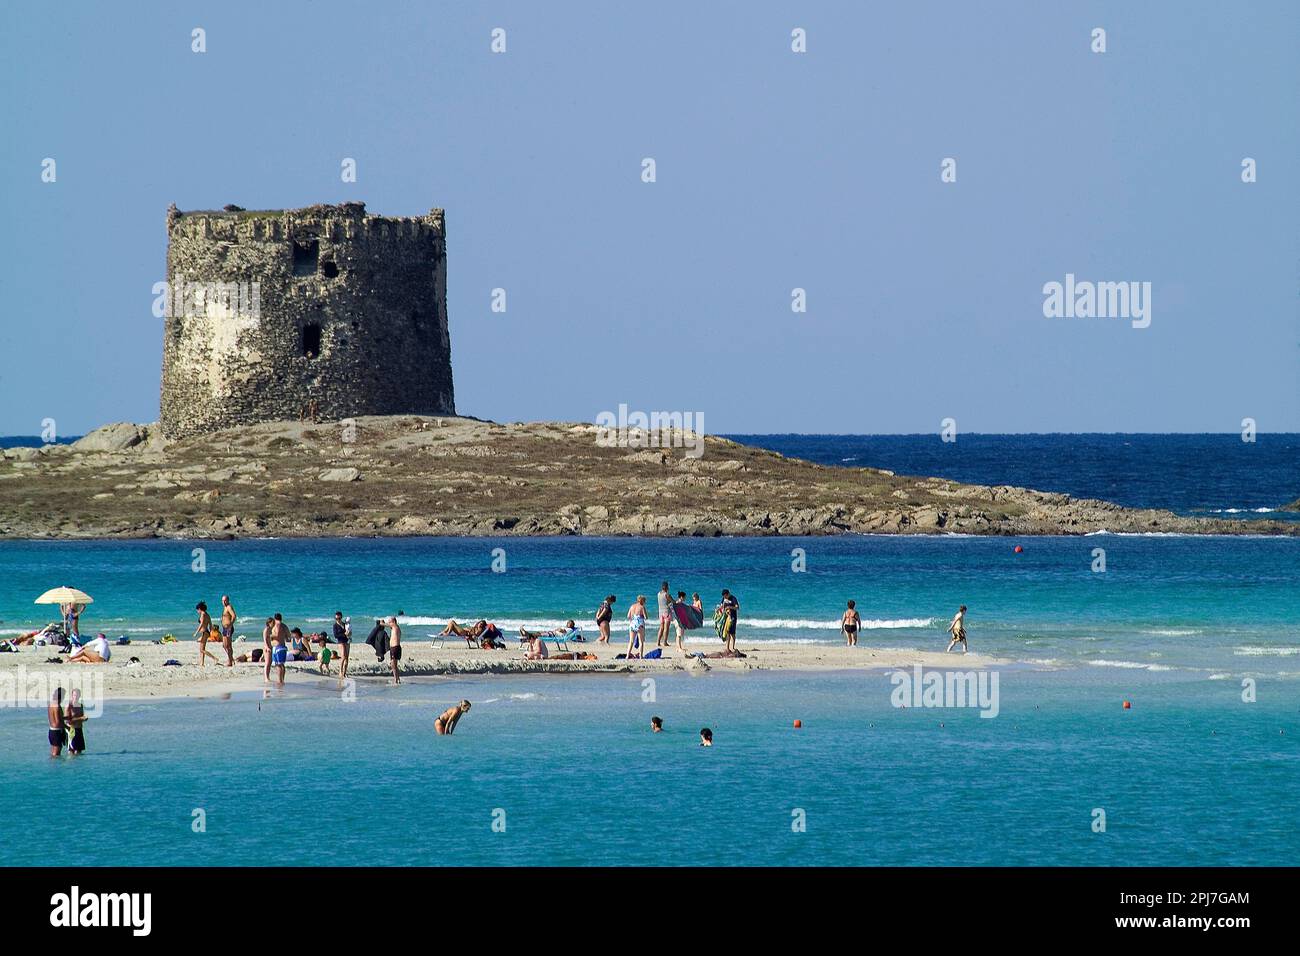 La candida Spiaggia della Pelosa, sullo sfondo la torre omonima, di fronte all'Isola dell'Asinara, nella Nurra settentrionale. Una delle spiagge più c Banque D'Images